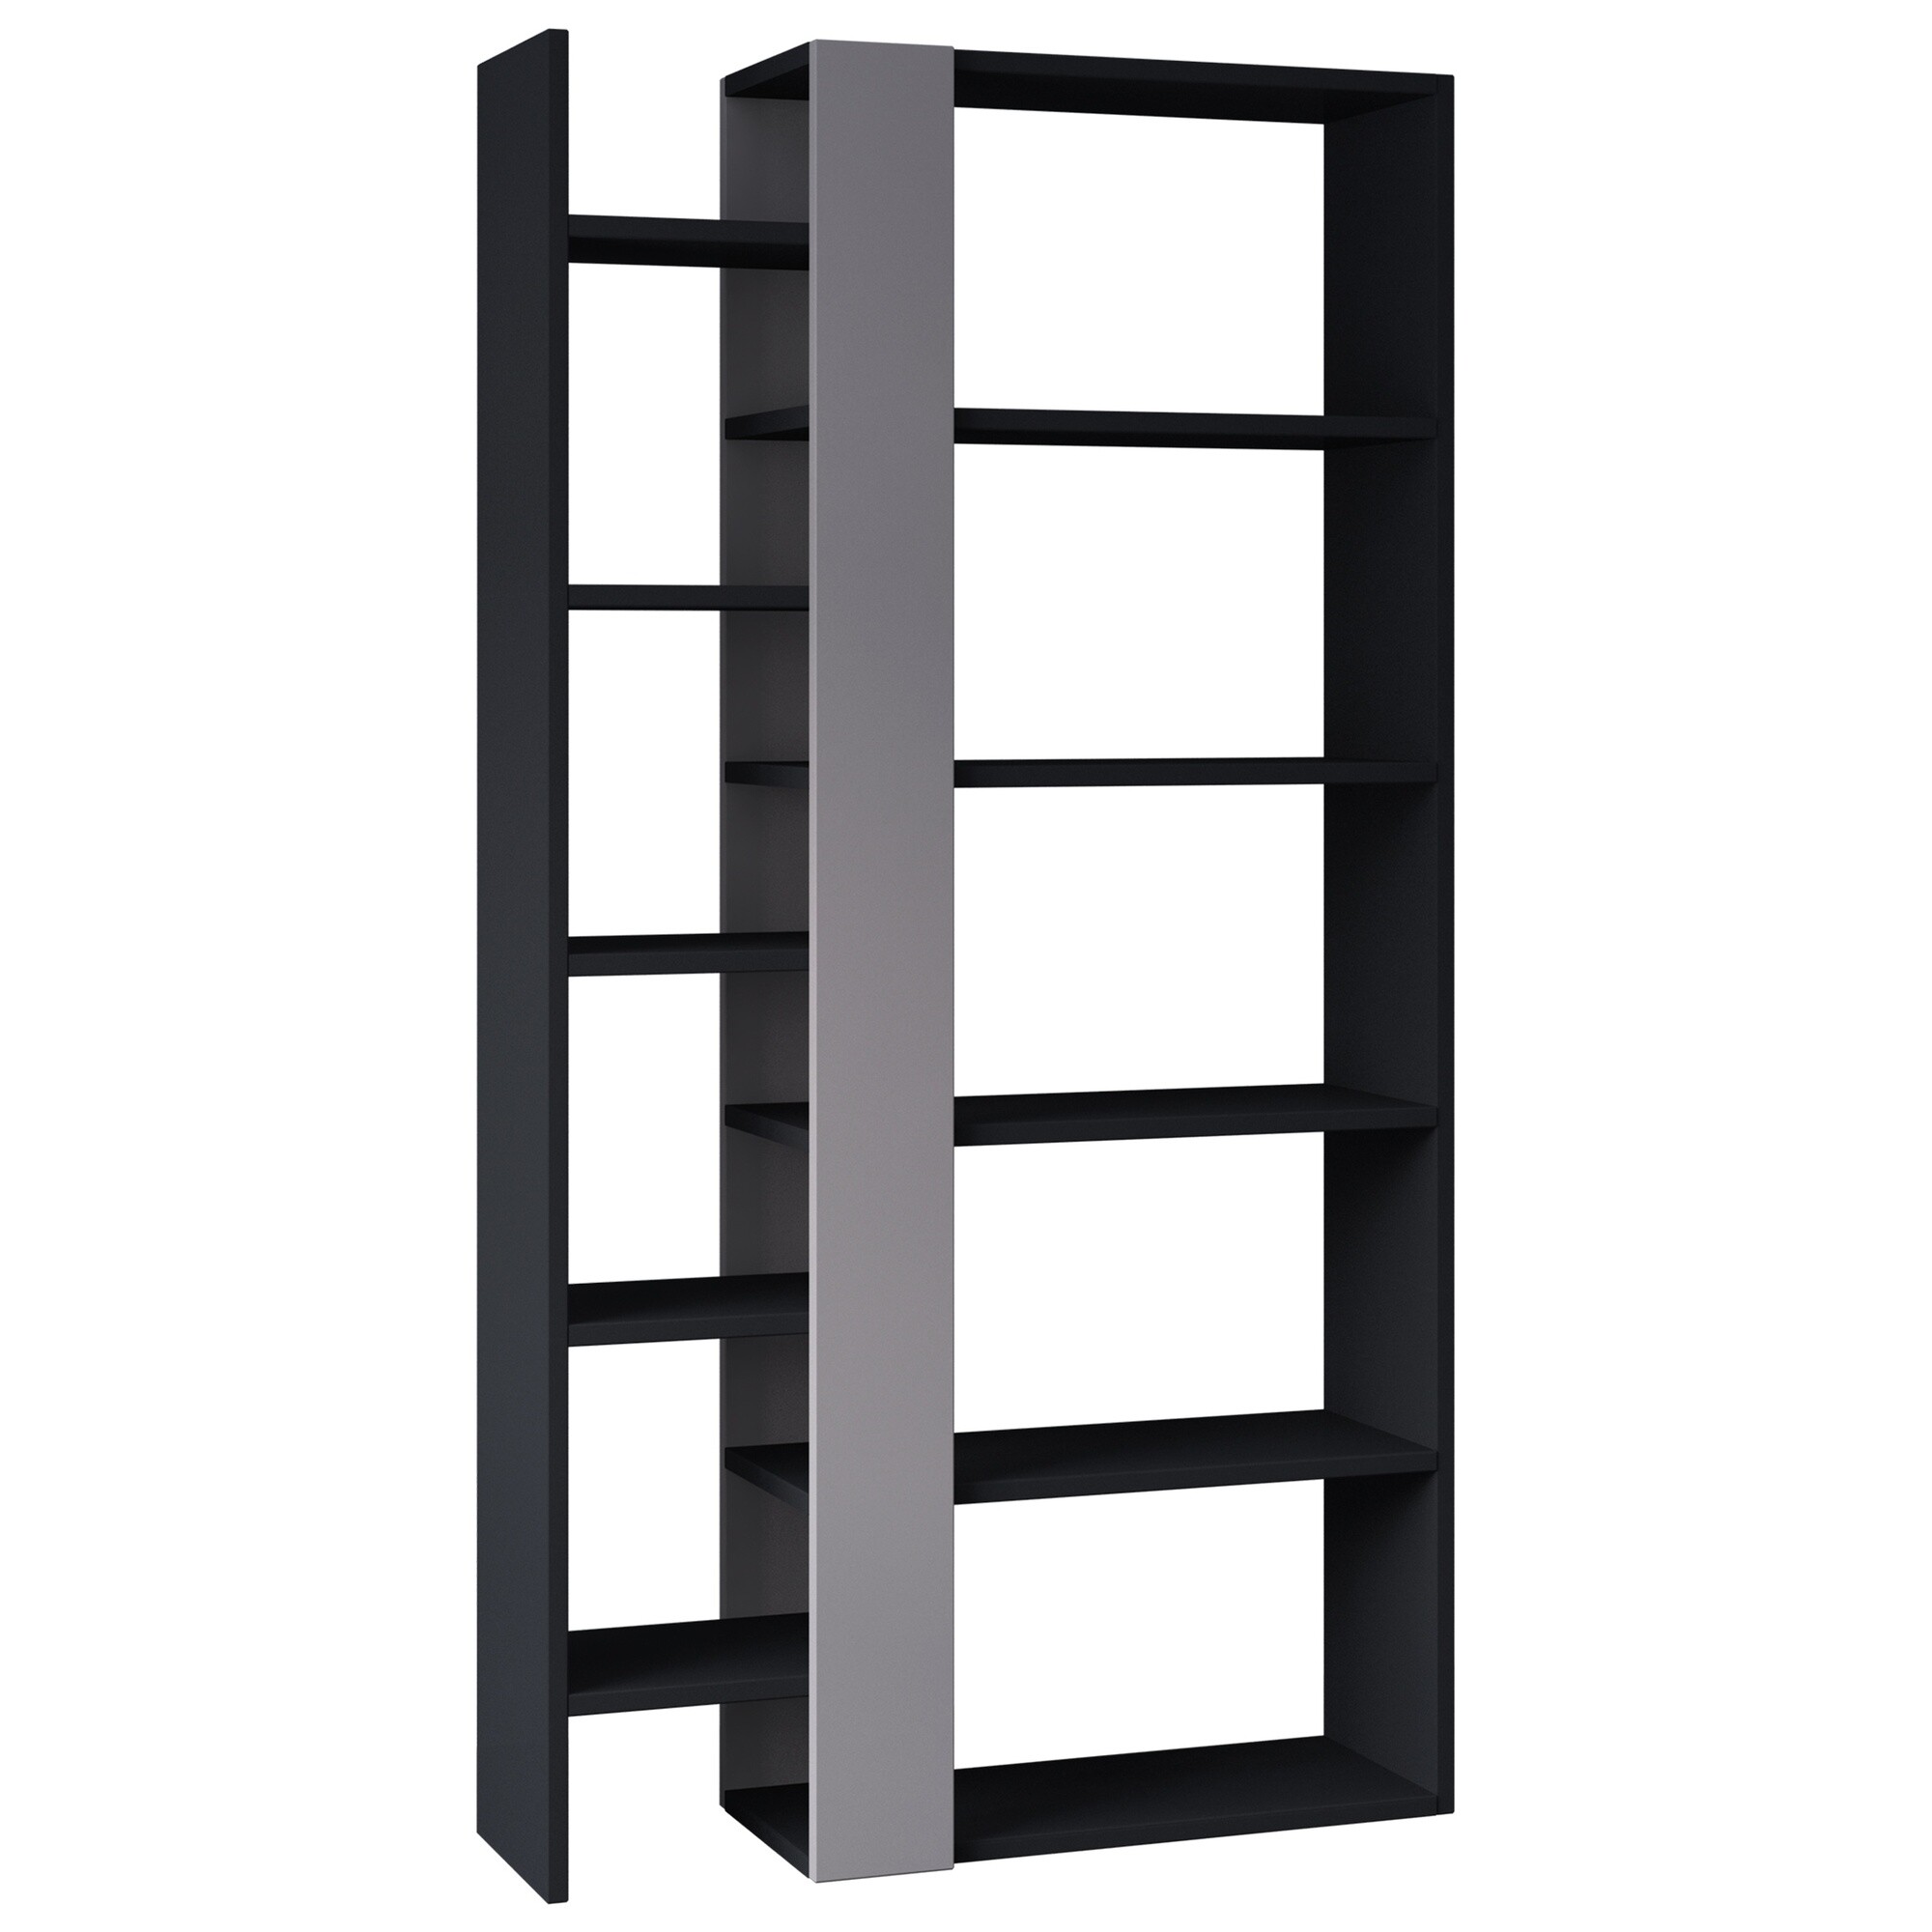 Стеллаж деревянный прямой черный, серый Lift Bookcase Anthracite LEV00596